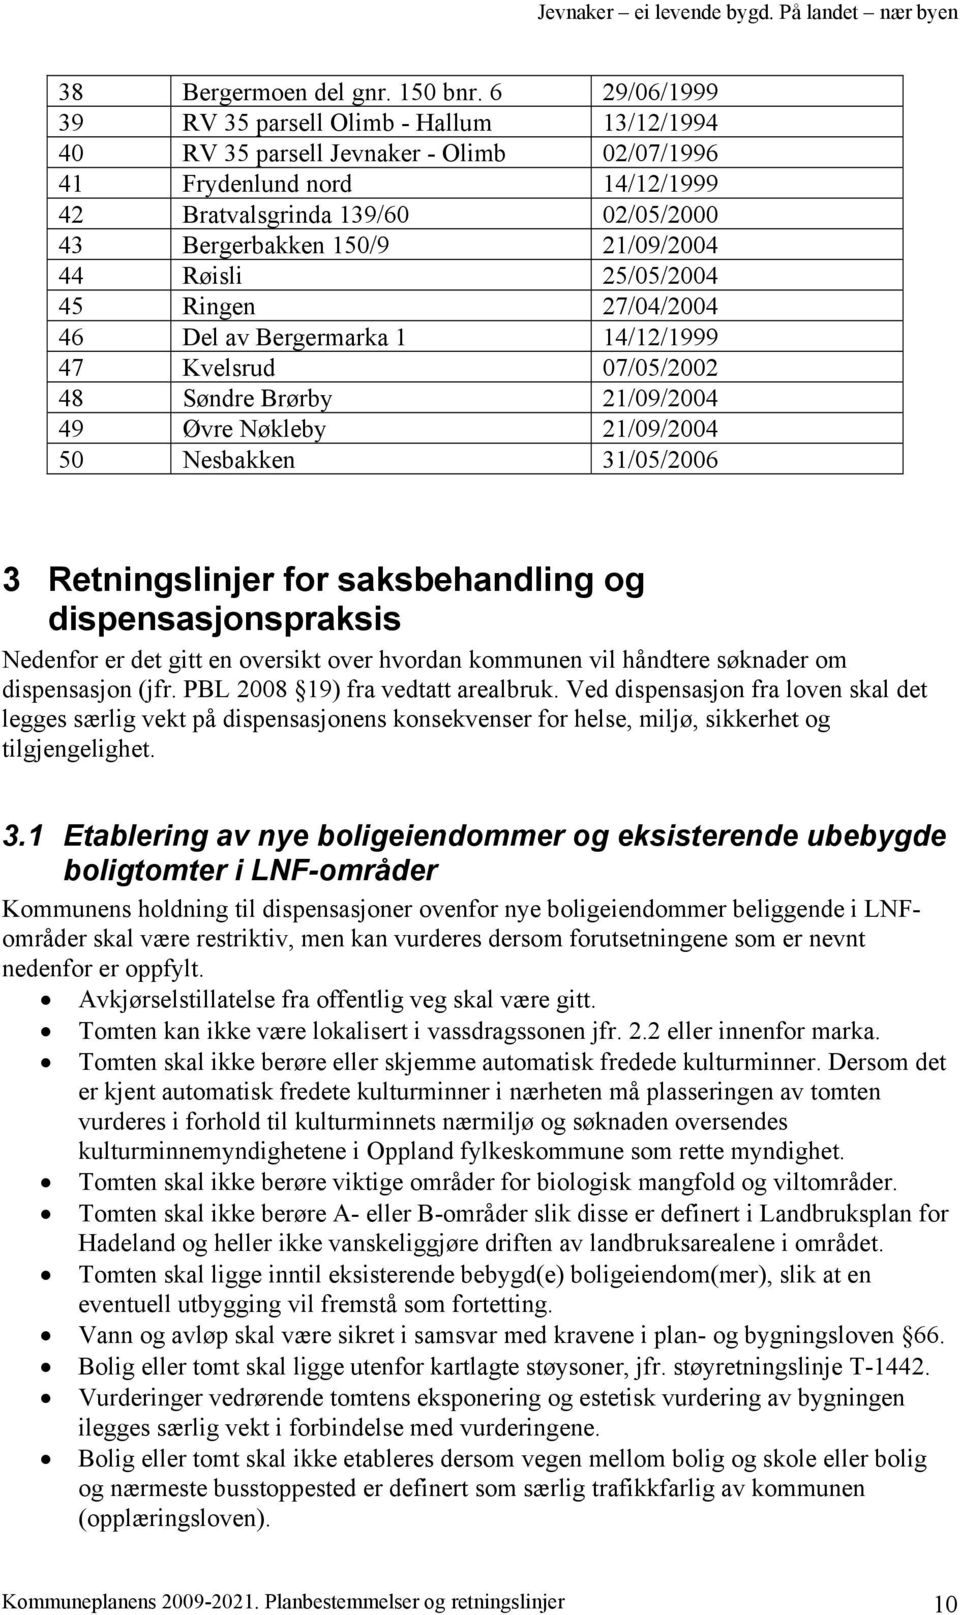 44 Røisli 25/05/2004 45 Ringen 27/04/2004 46 Del av Bergermarka 1 14/12/1999 47 Kvelsrud 07/05/2002 48 Søndre Brørby 21/09/2004 49 Øvre Nøkleby 21/09/2004 50 Nesbakken 31/05/2006 3 Retningslinjer for